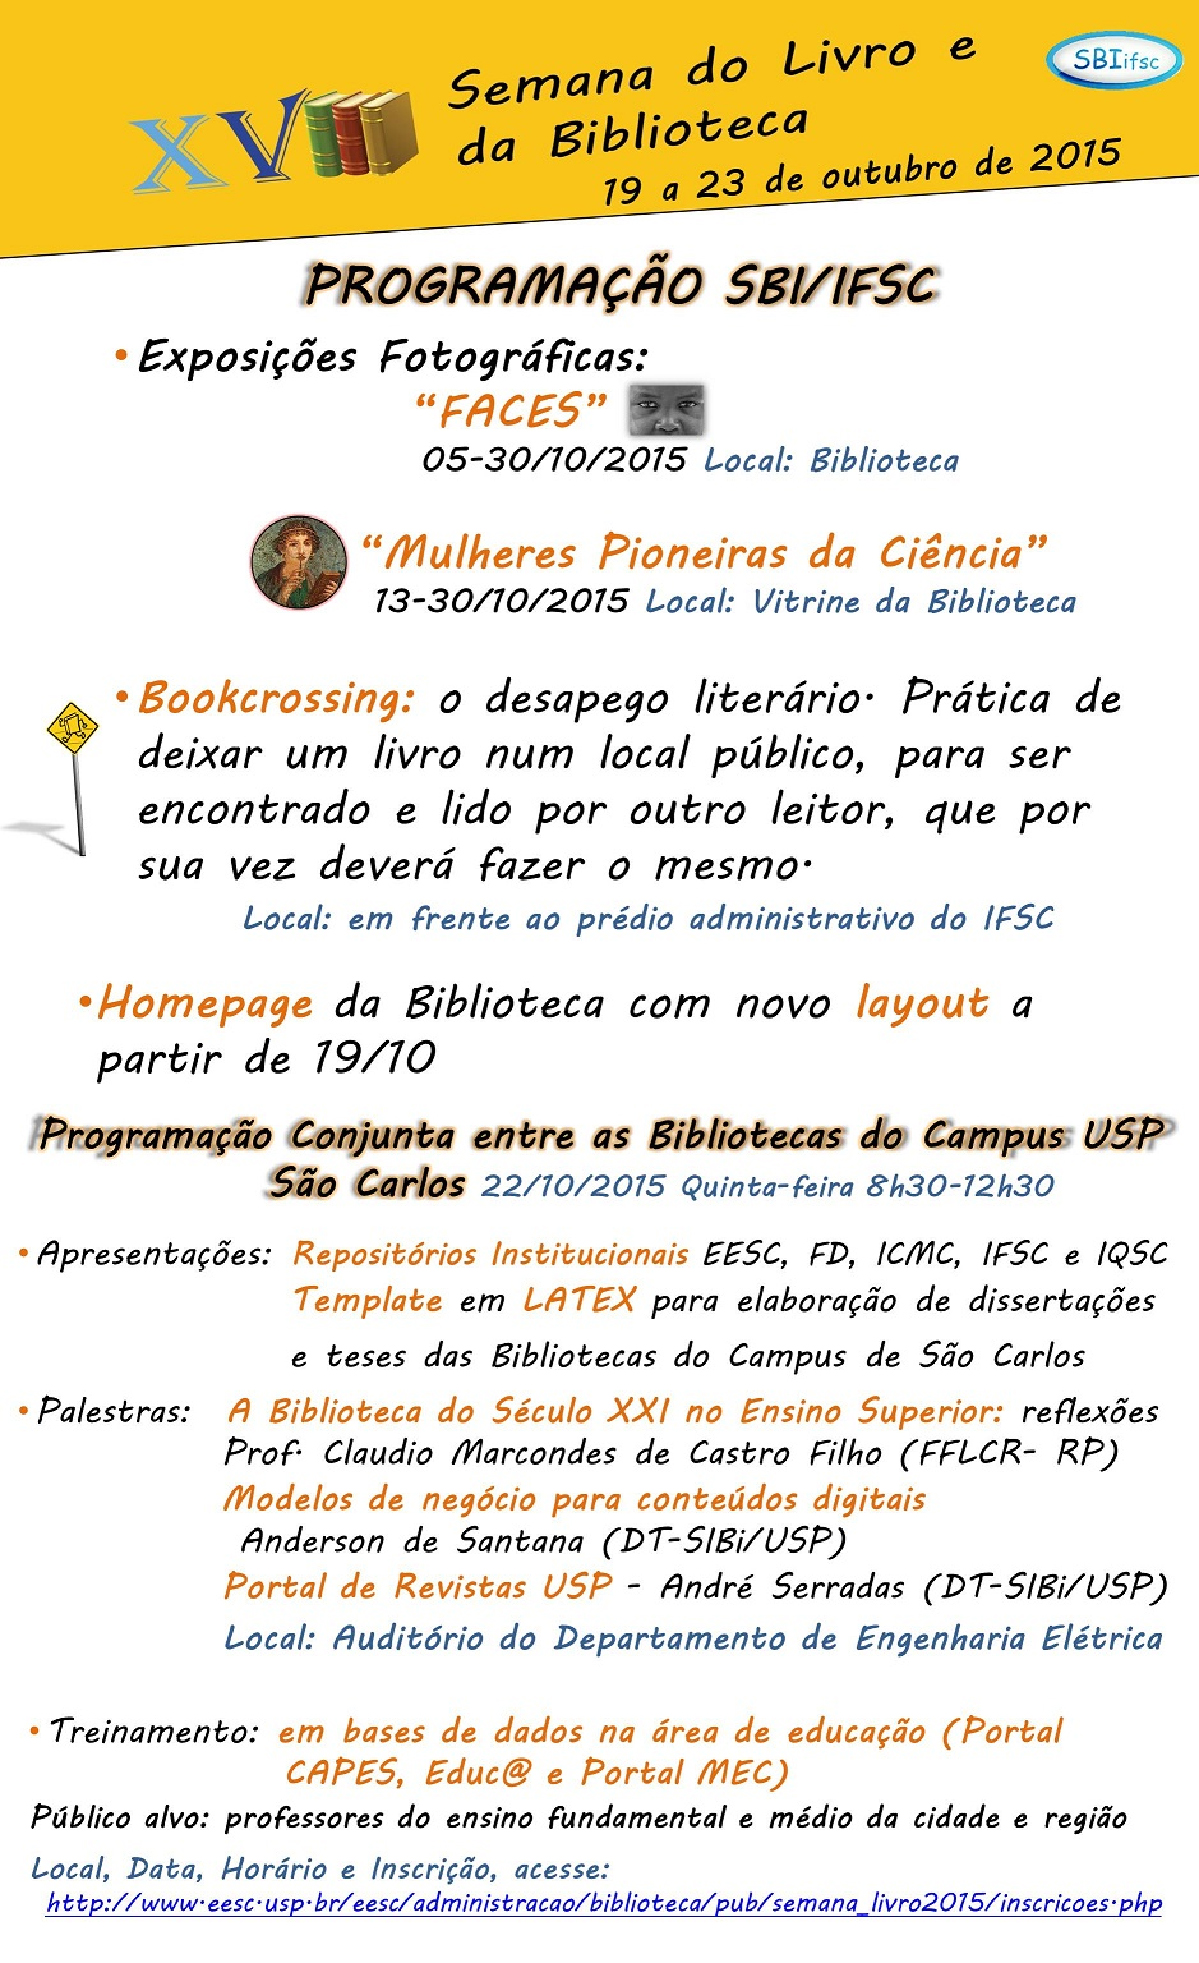 Semana_do_Livro_e_da_Biblioteca_2015